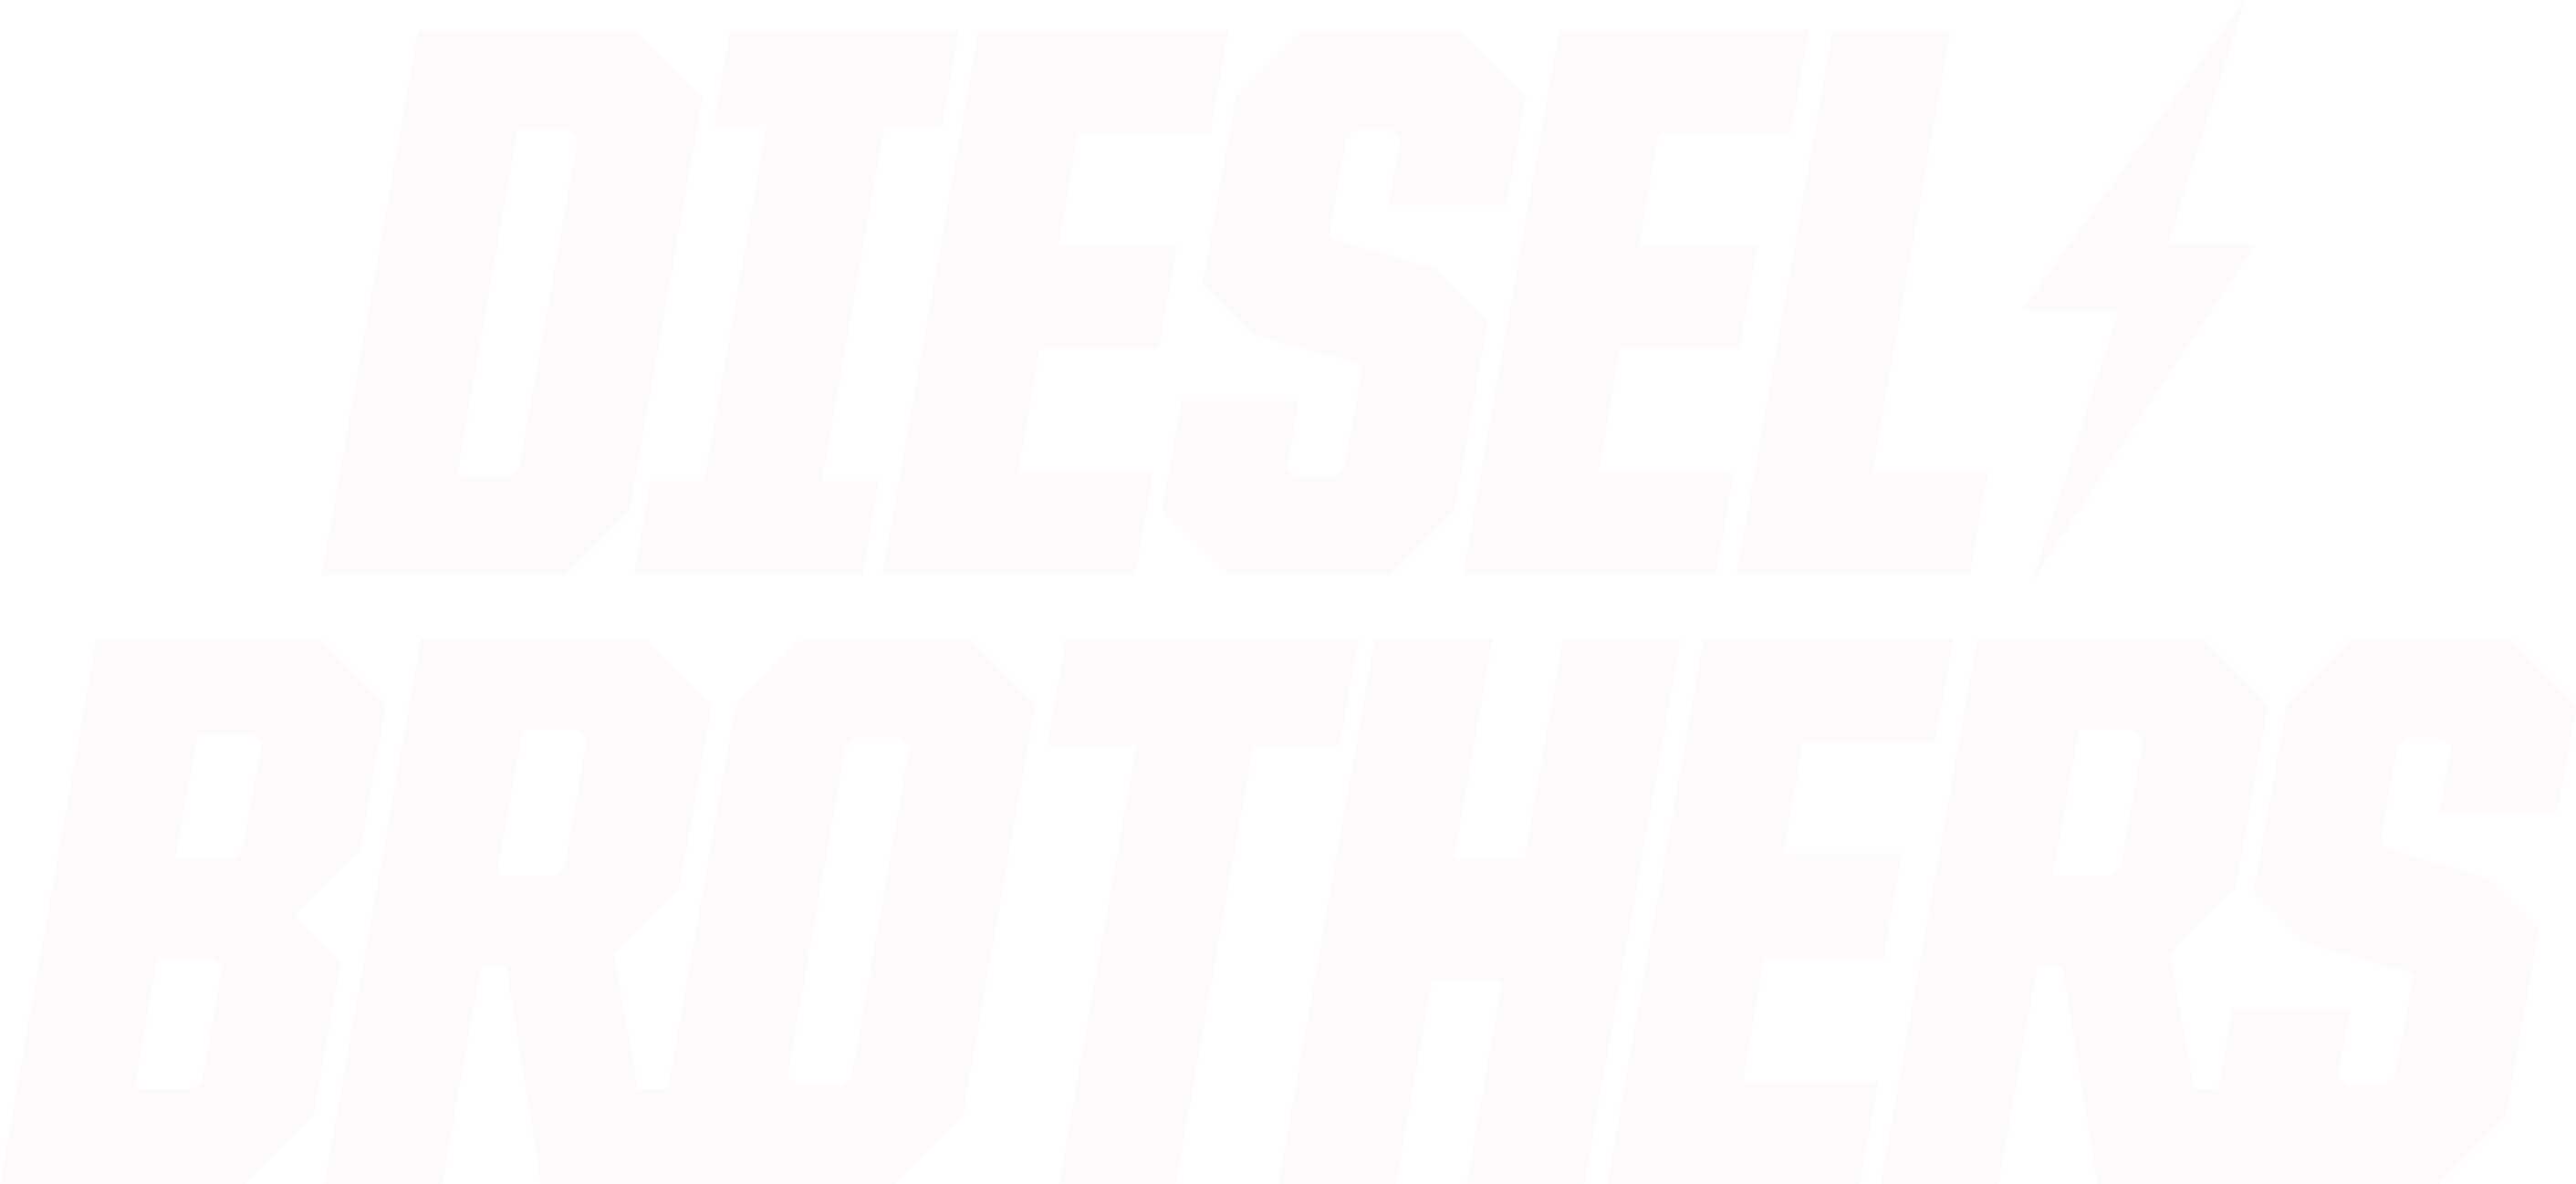 Diesel Brothers logo